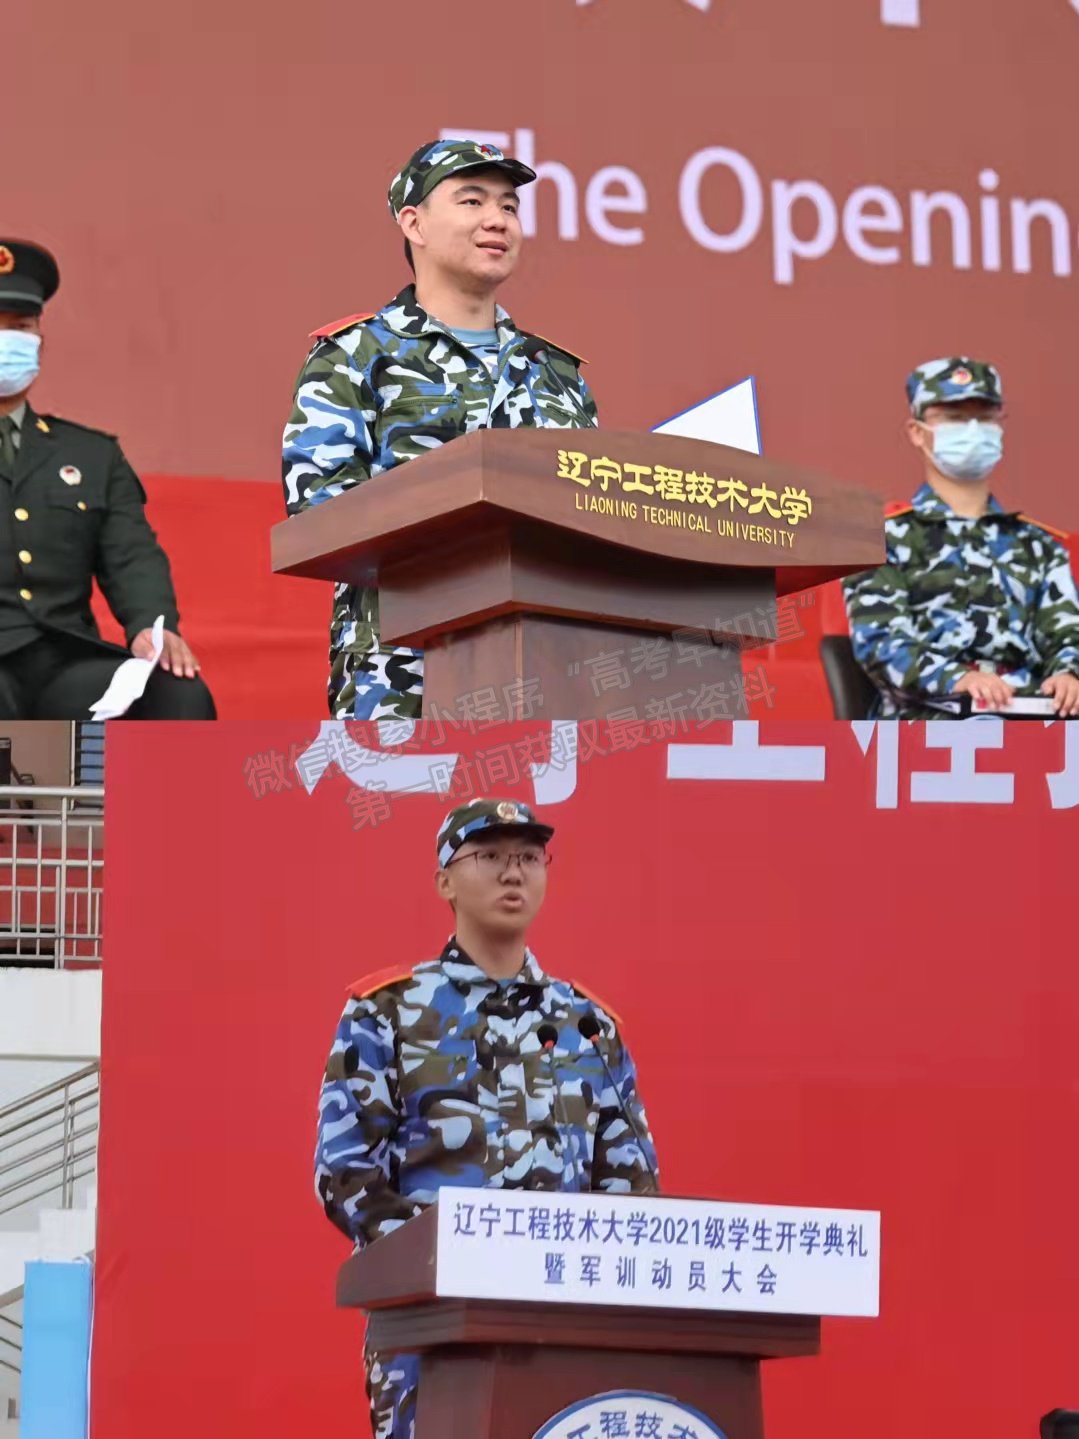 辽宁工程技术大学隆重举行2021级新生开学典礼暨军训动员大会